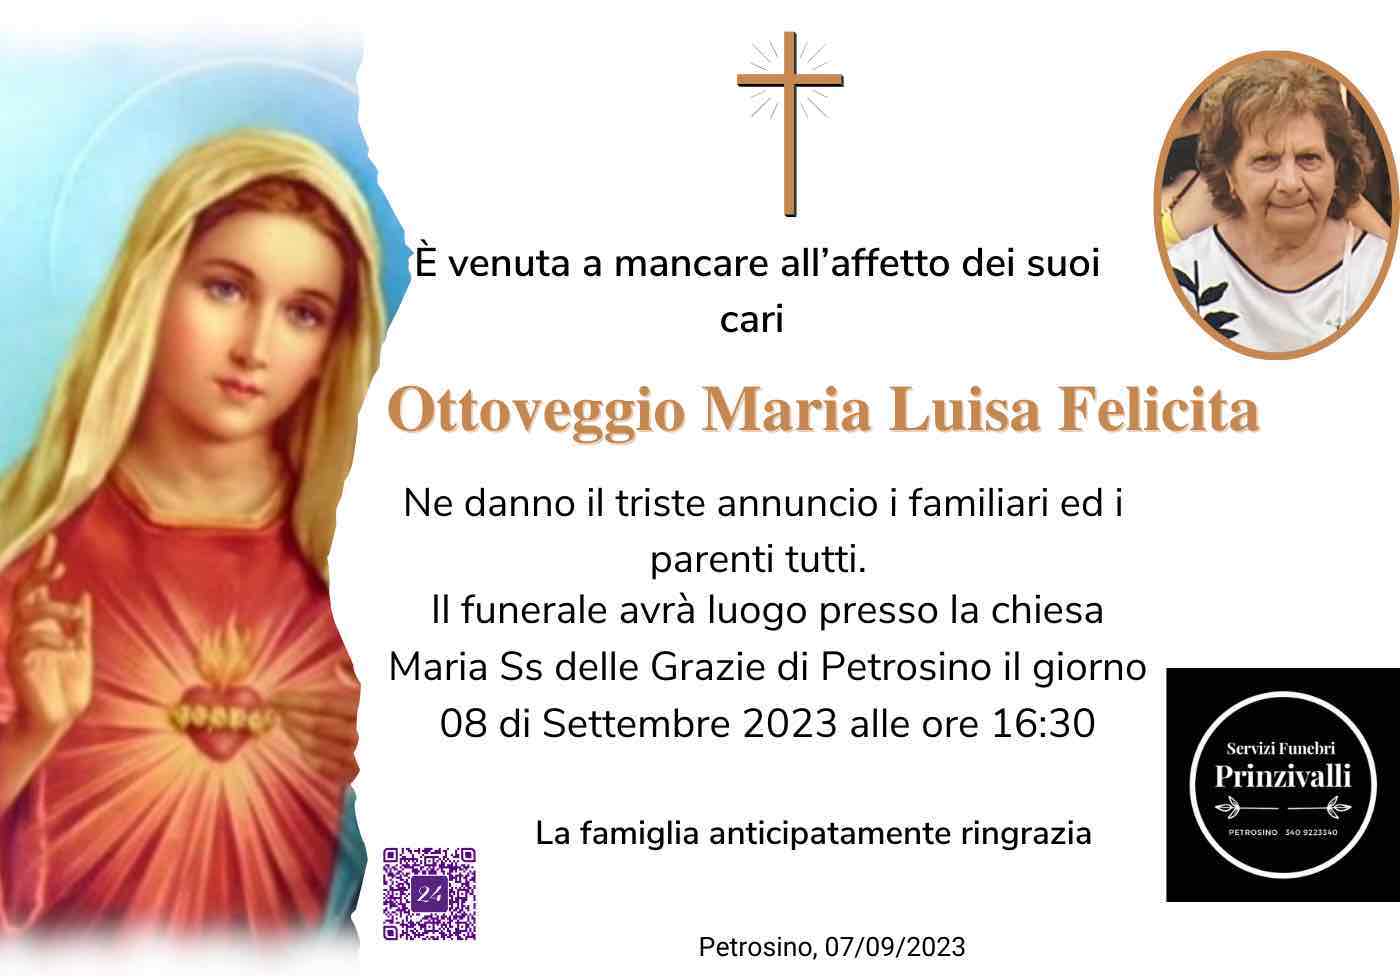 Maria Luisa Felicita Ottoveggio